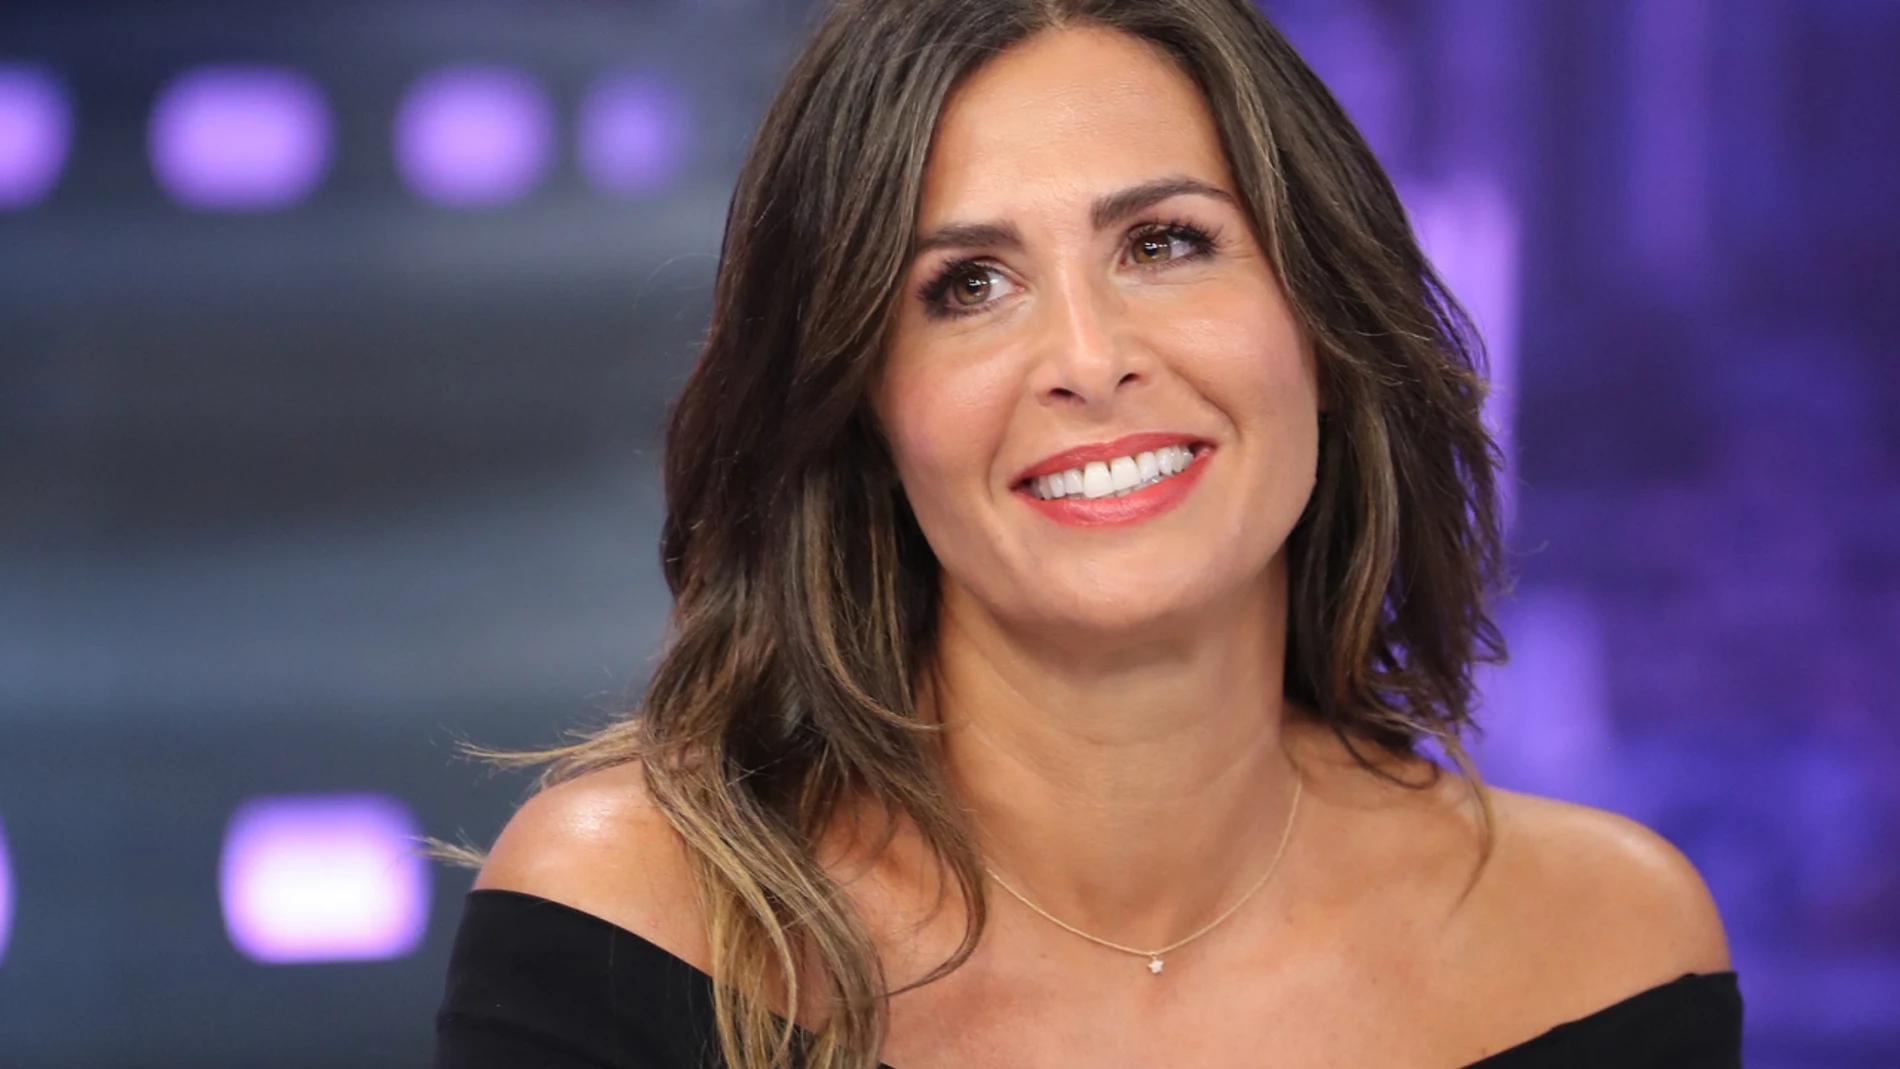 La presentadora Nuria Roca durante el programa de televisión " El hormiguero " en Madrid.06/09/2018